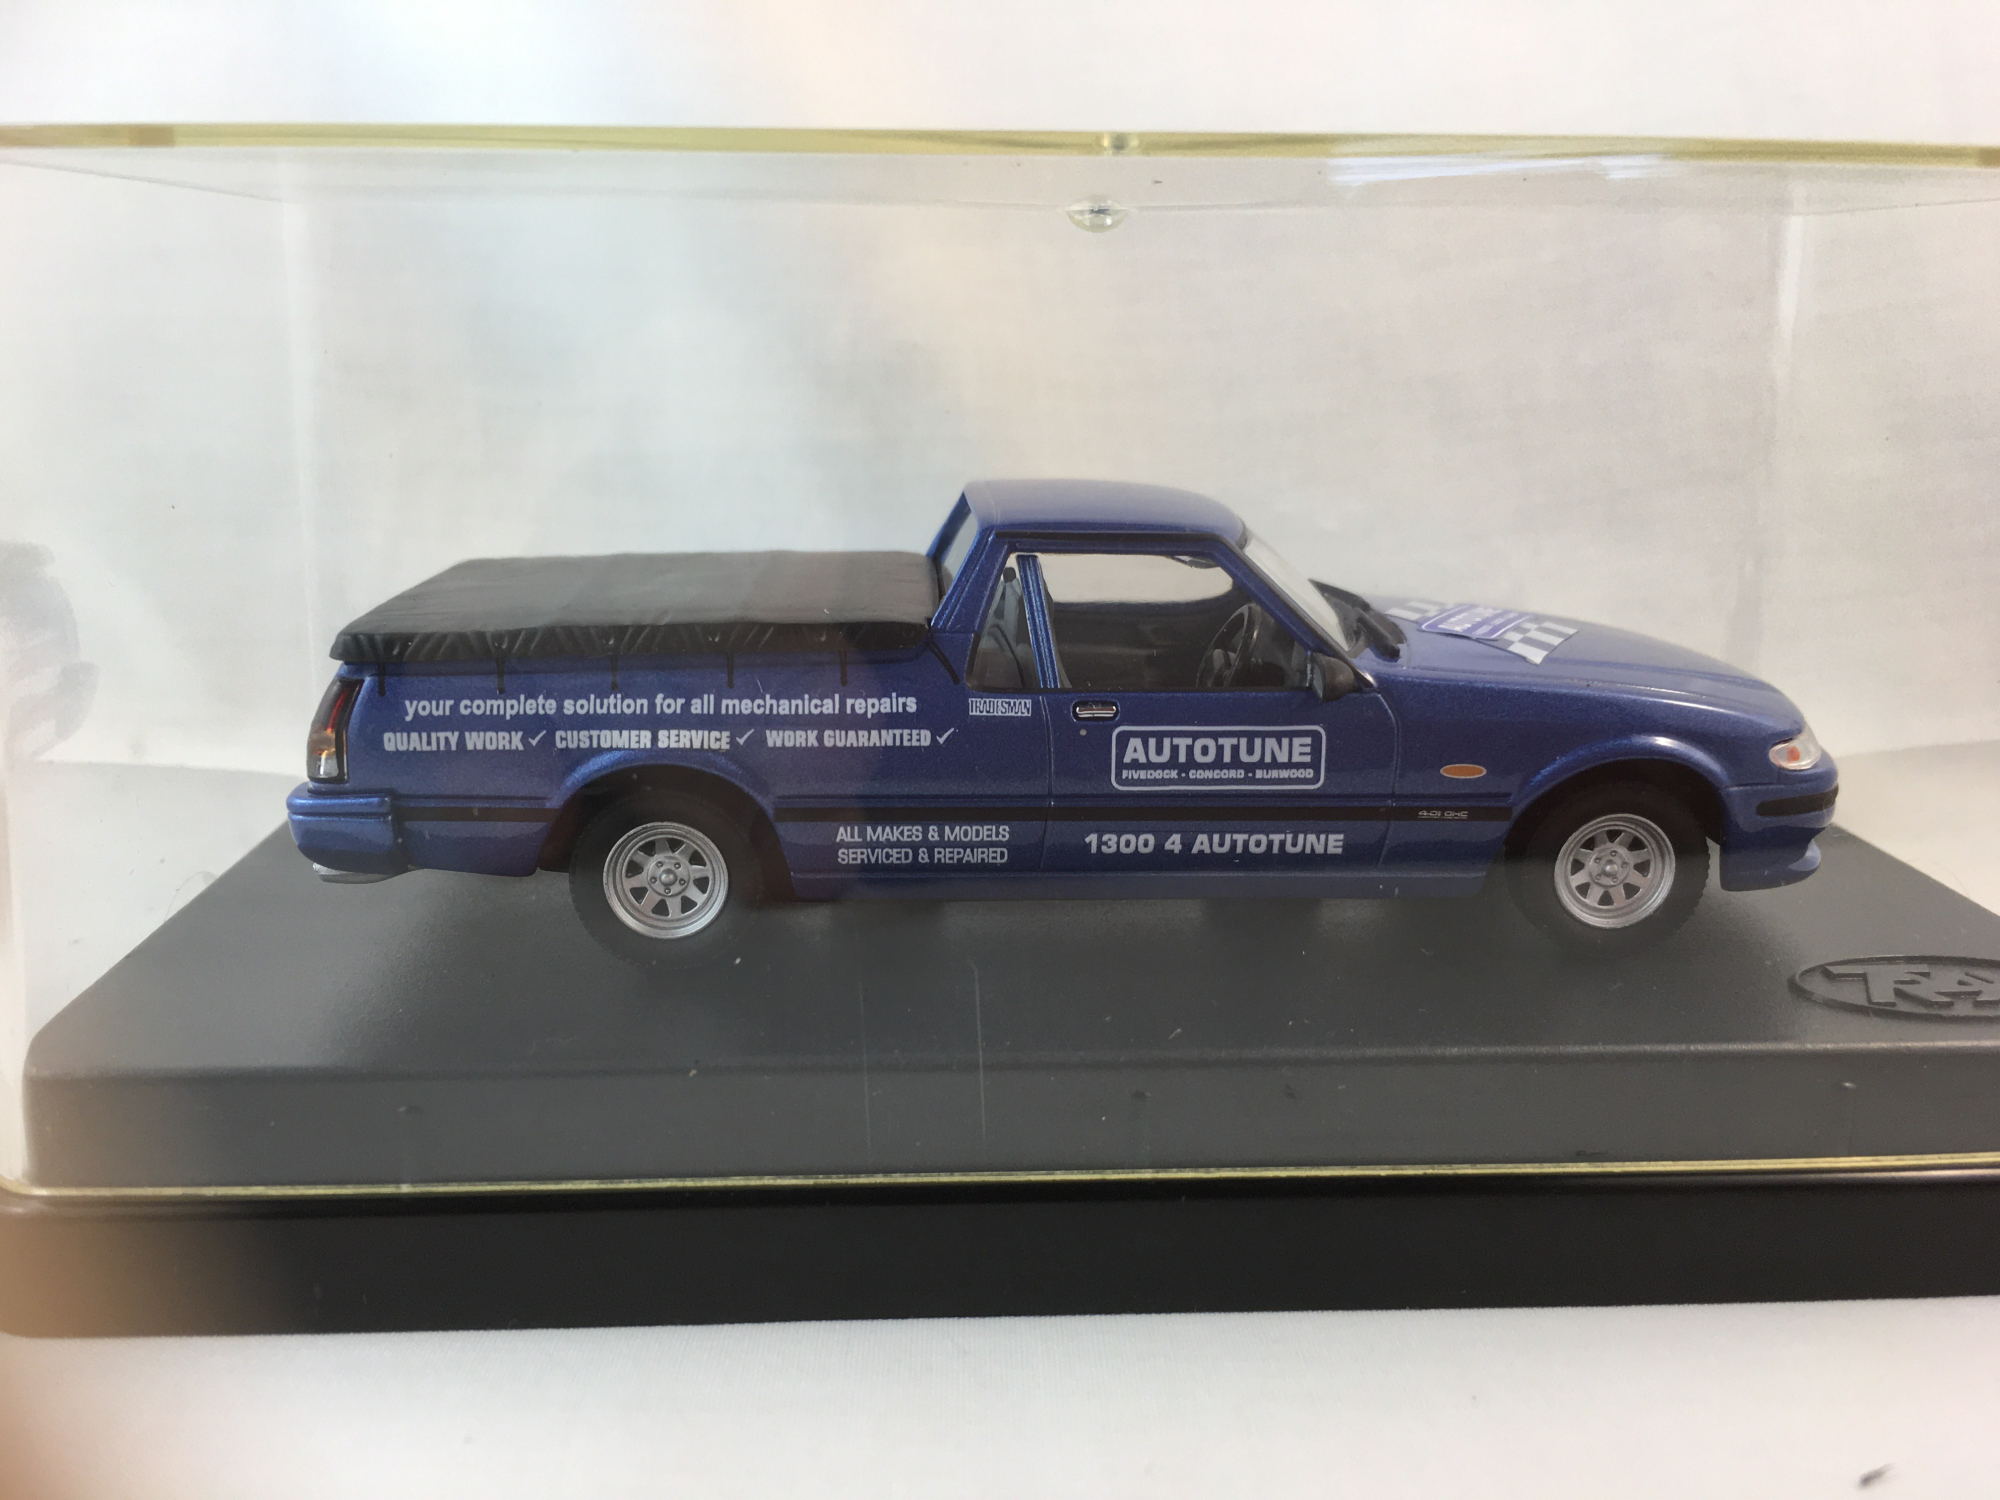 1996 Ford Falcon XH Utility – Mauritius Blue – Autotune Deco